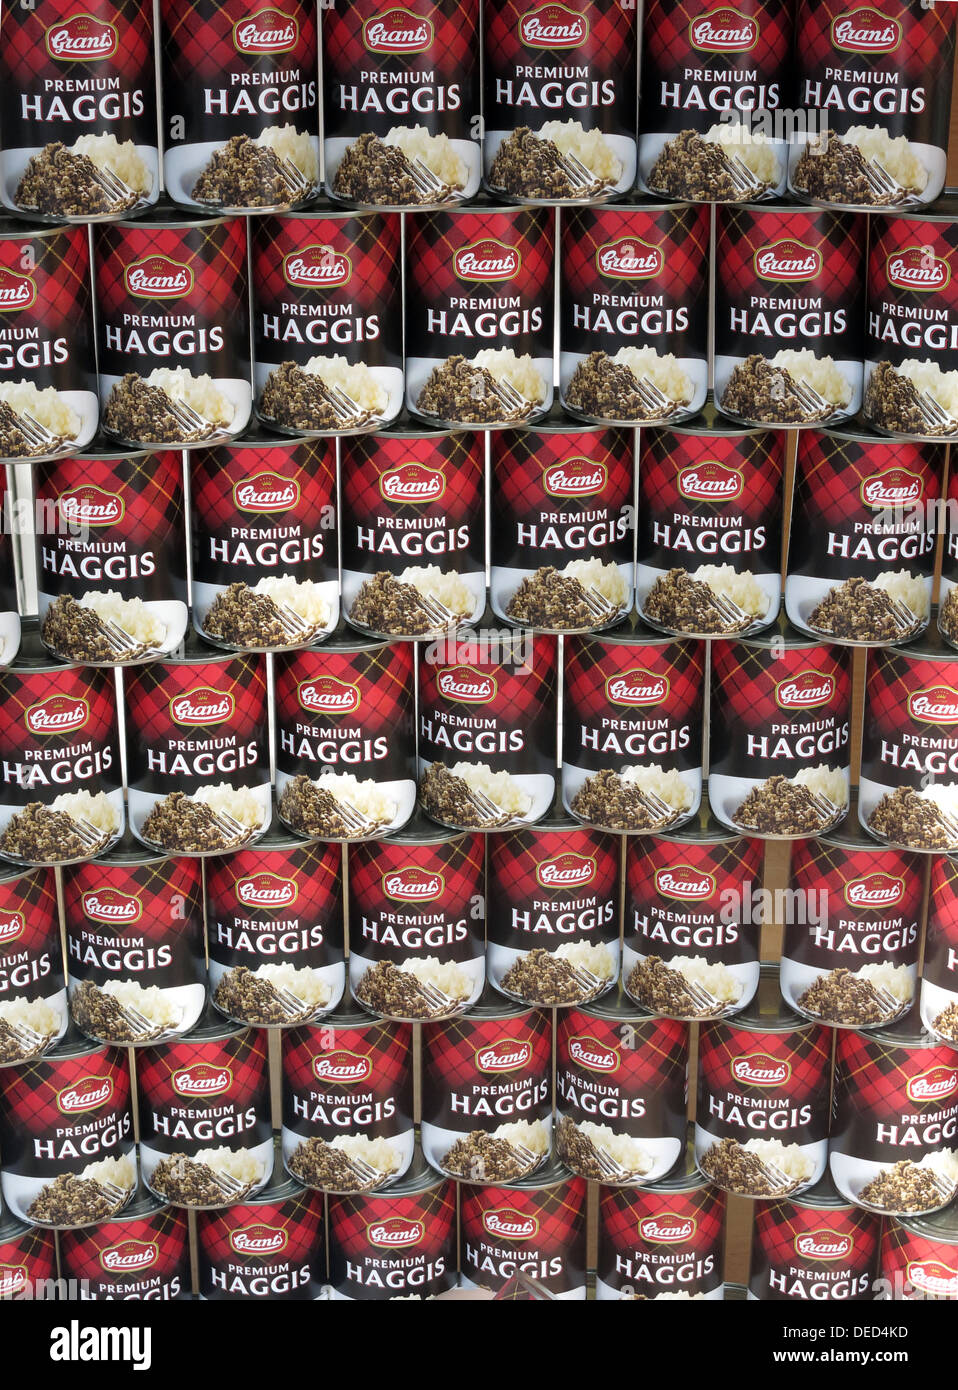 Boîtes de dons de produits alimentaires Haggis écossais Premium , empilés Banque D'Images